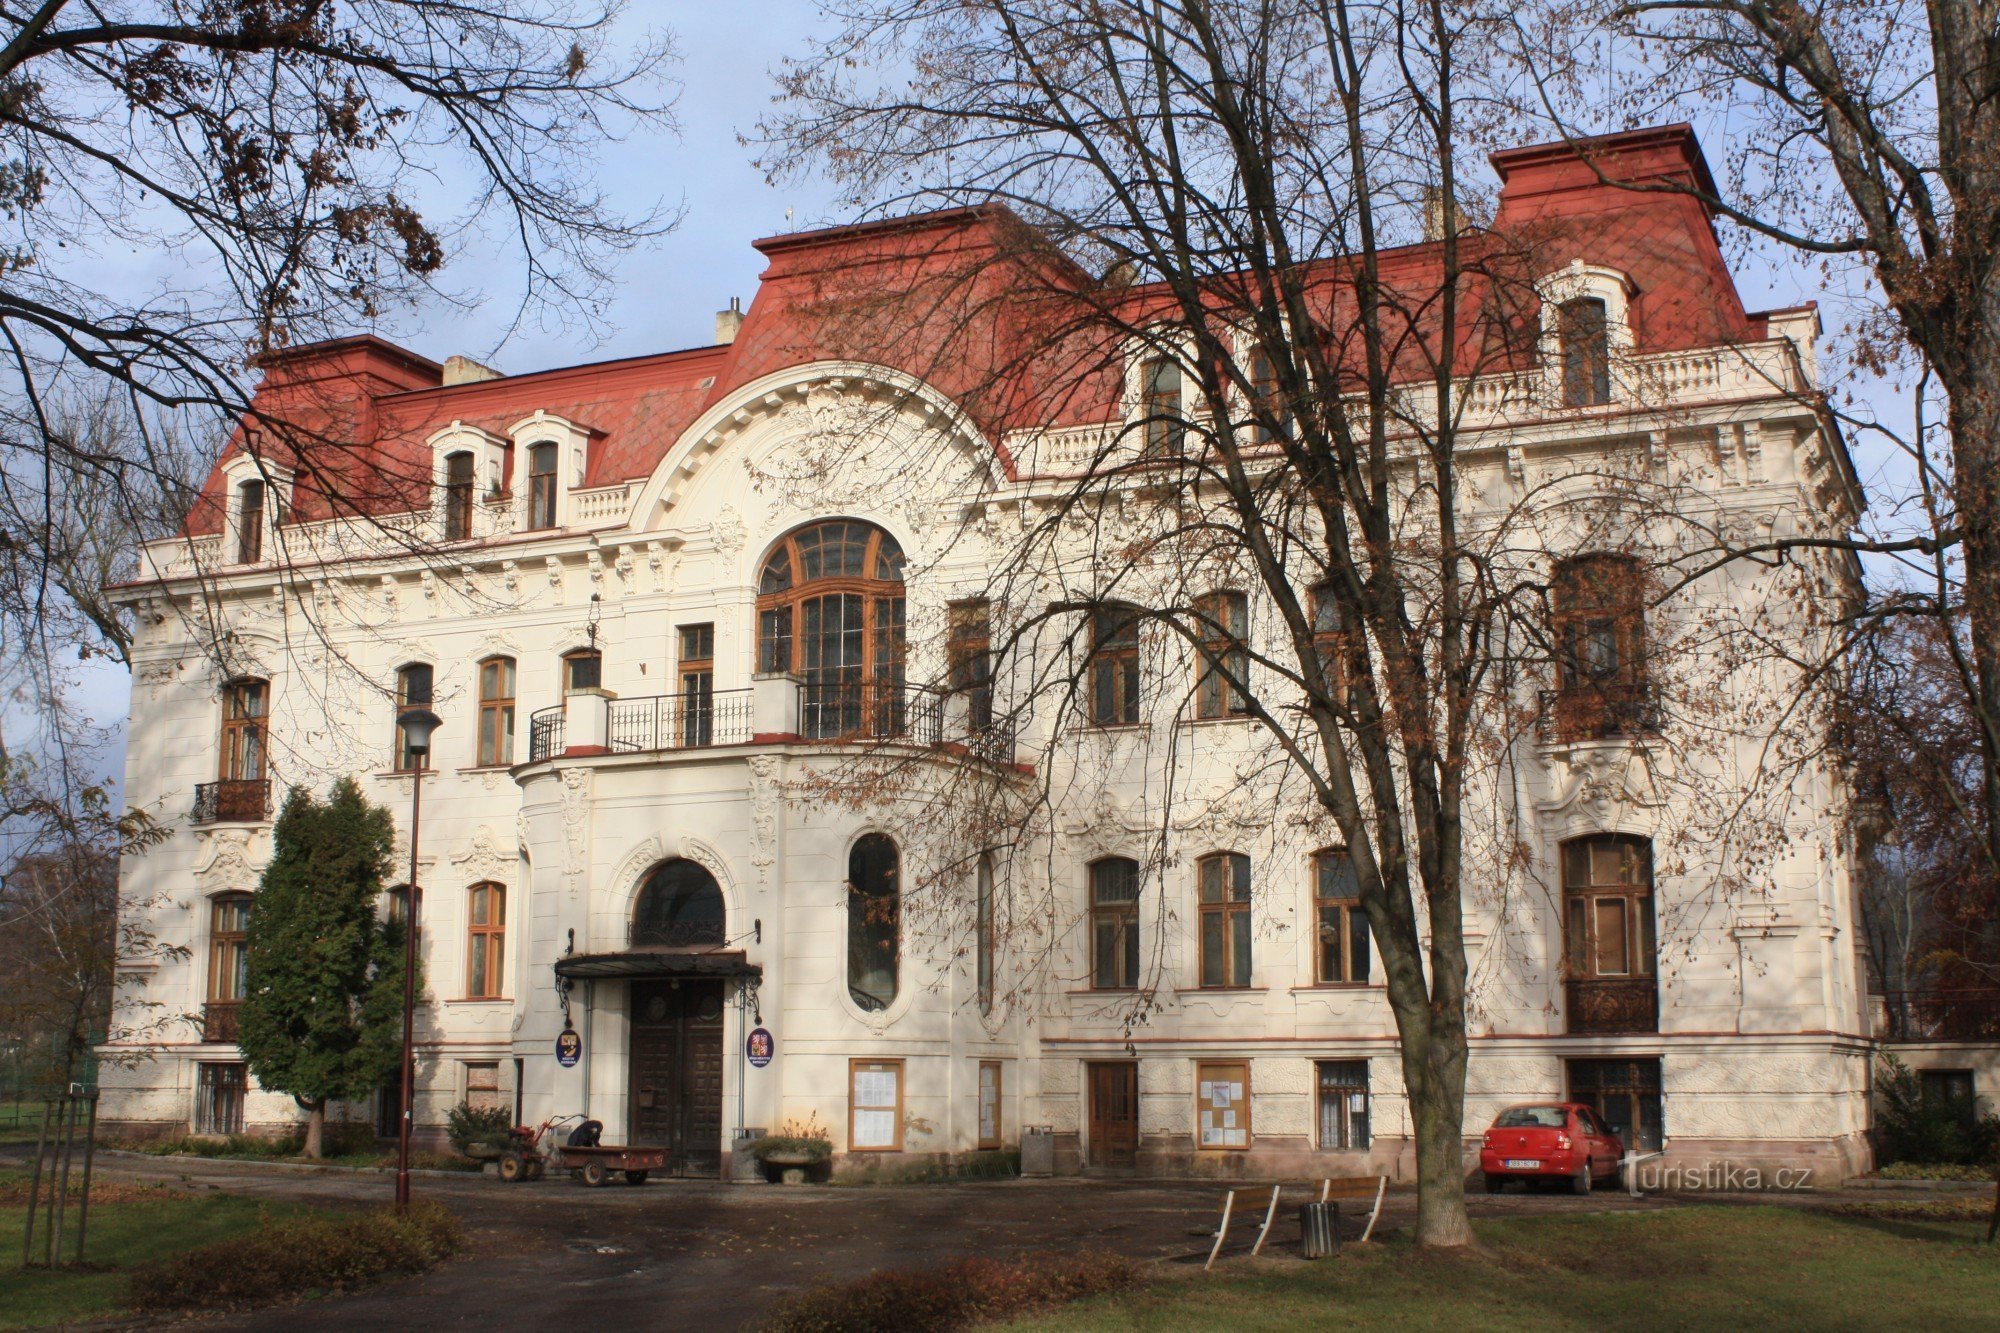 Svitavka - a városi iroda ma a villában található